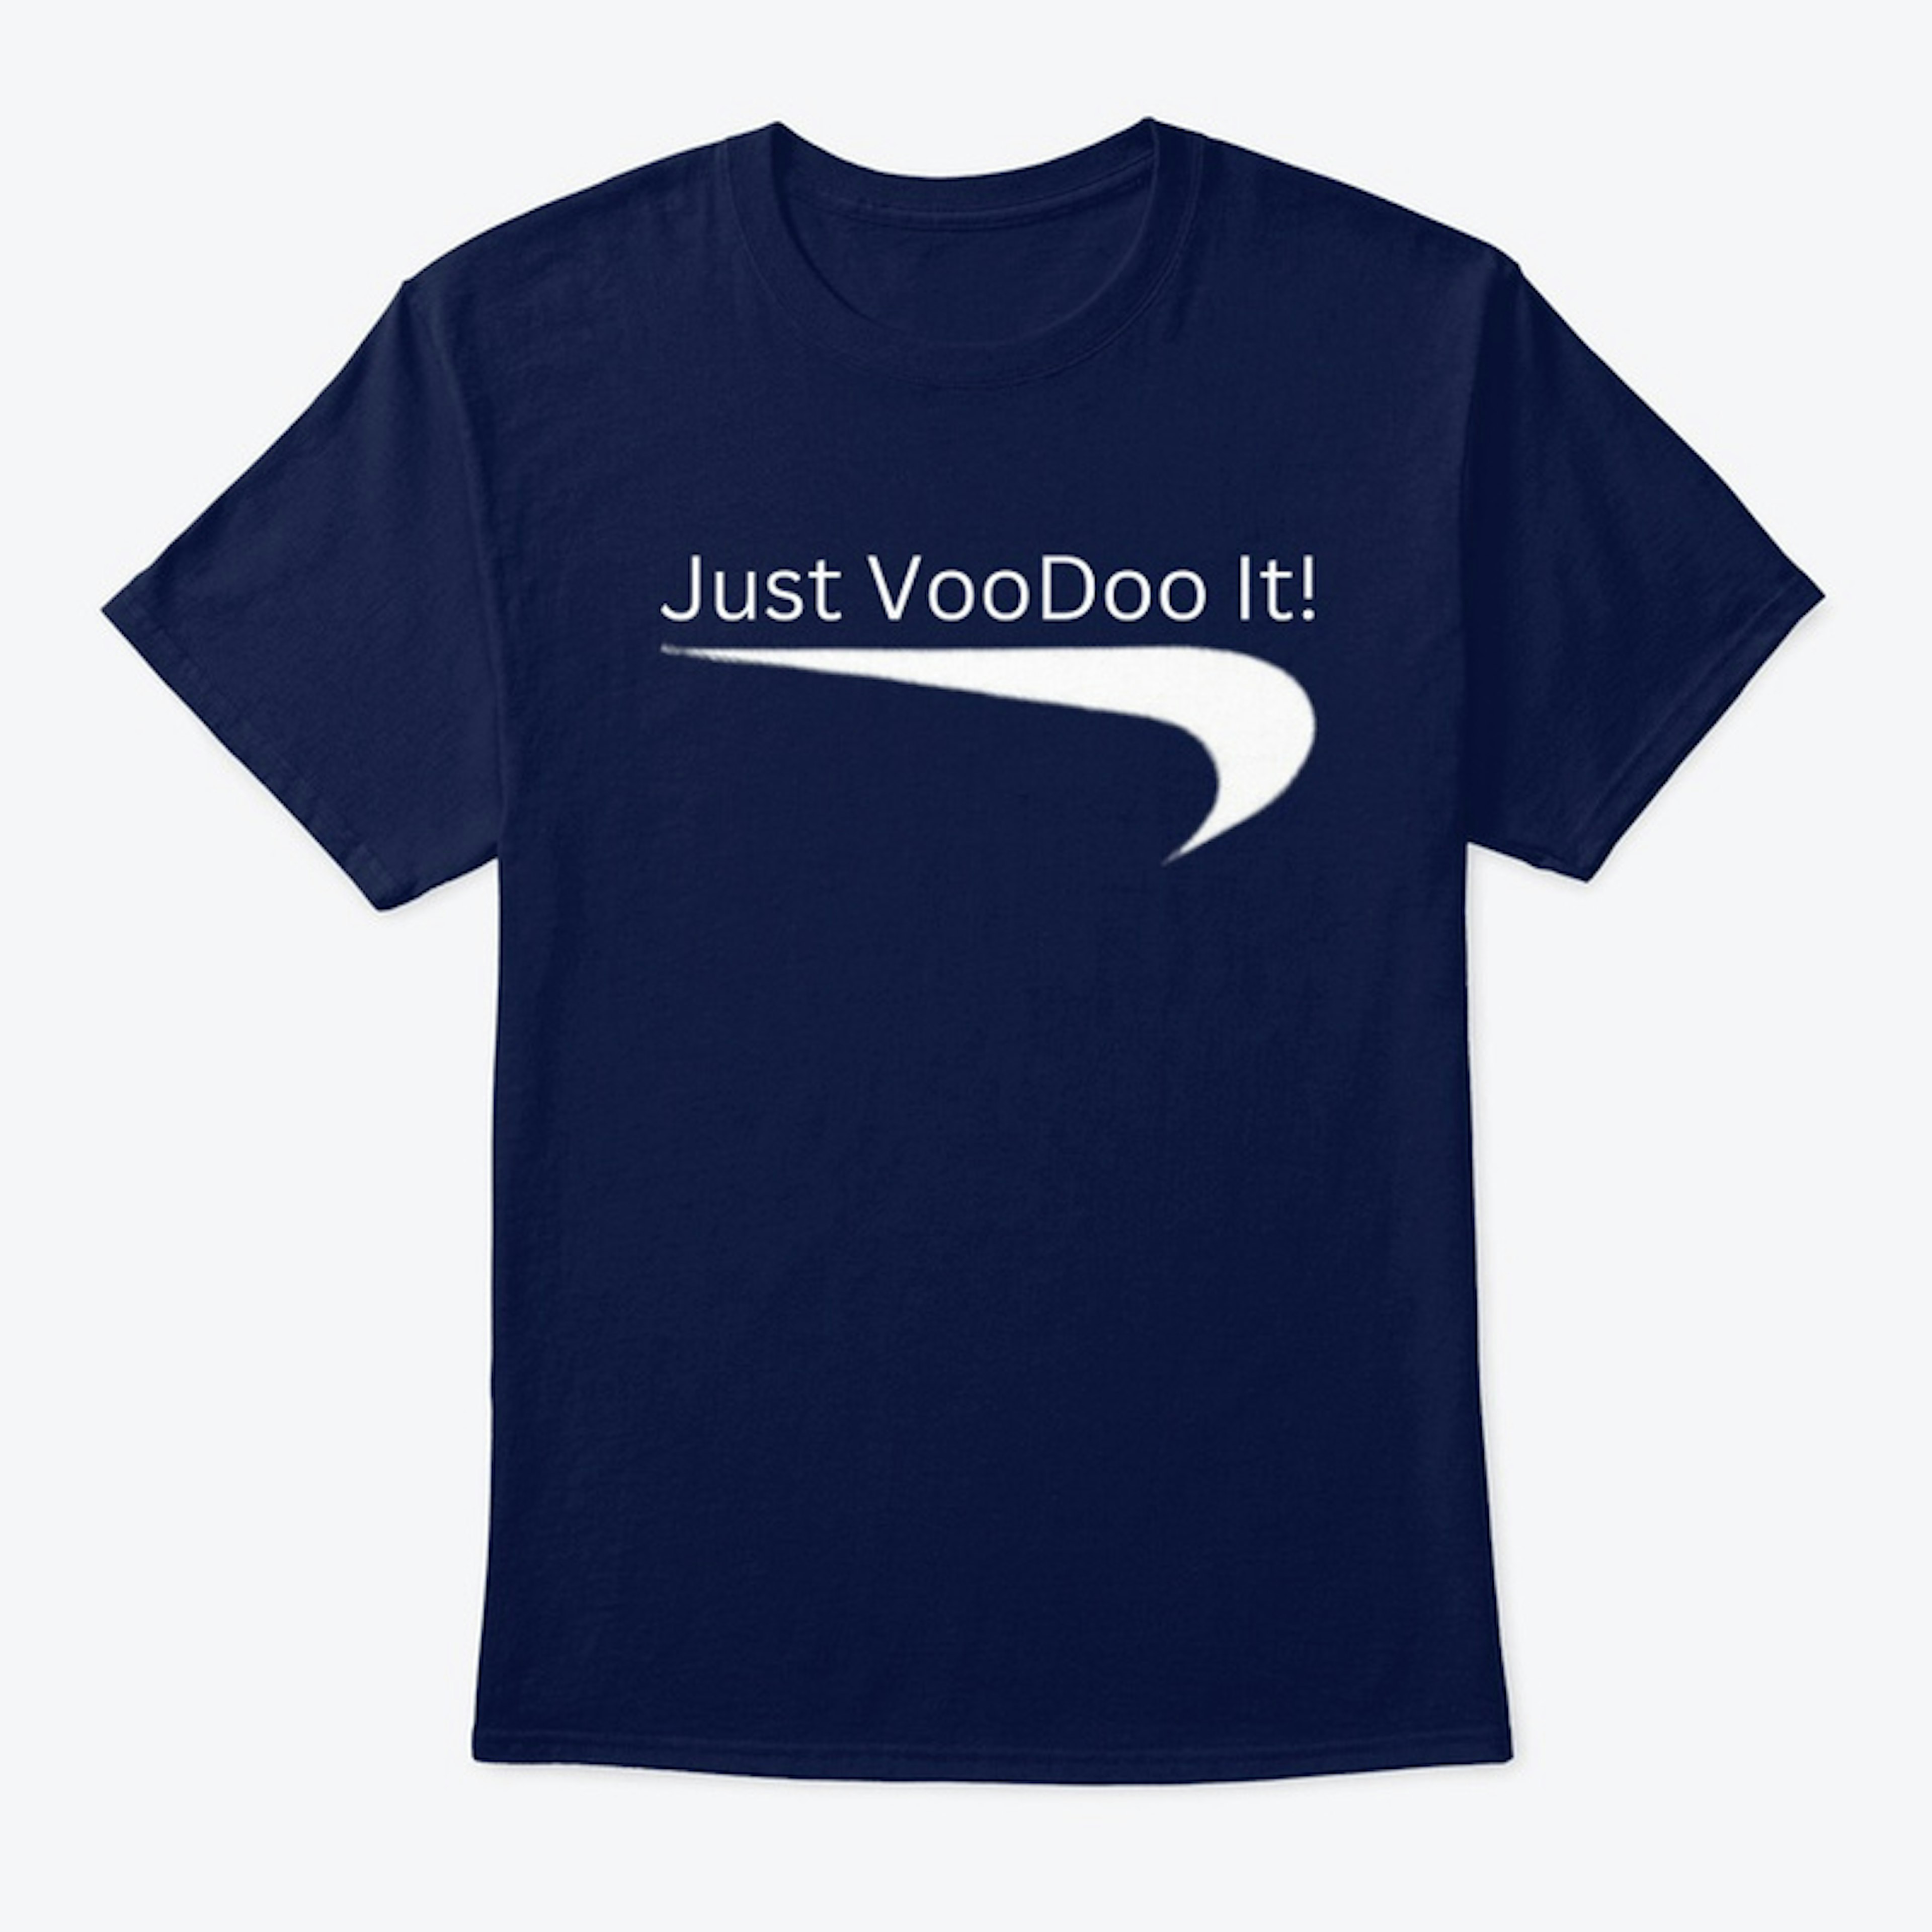 Just VooDoo It